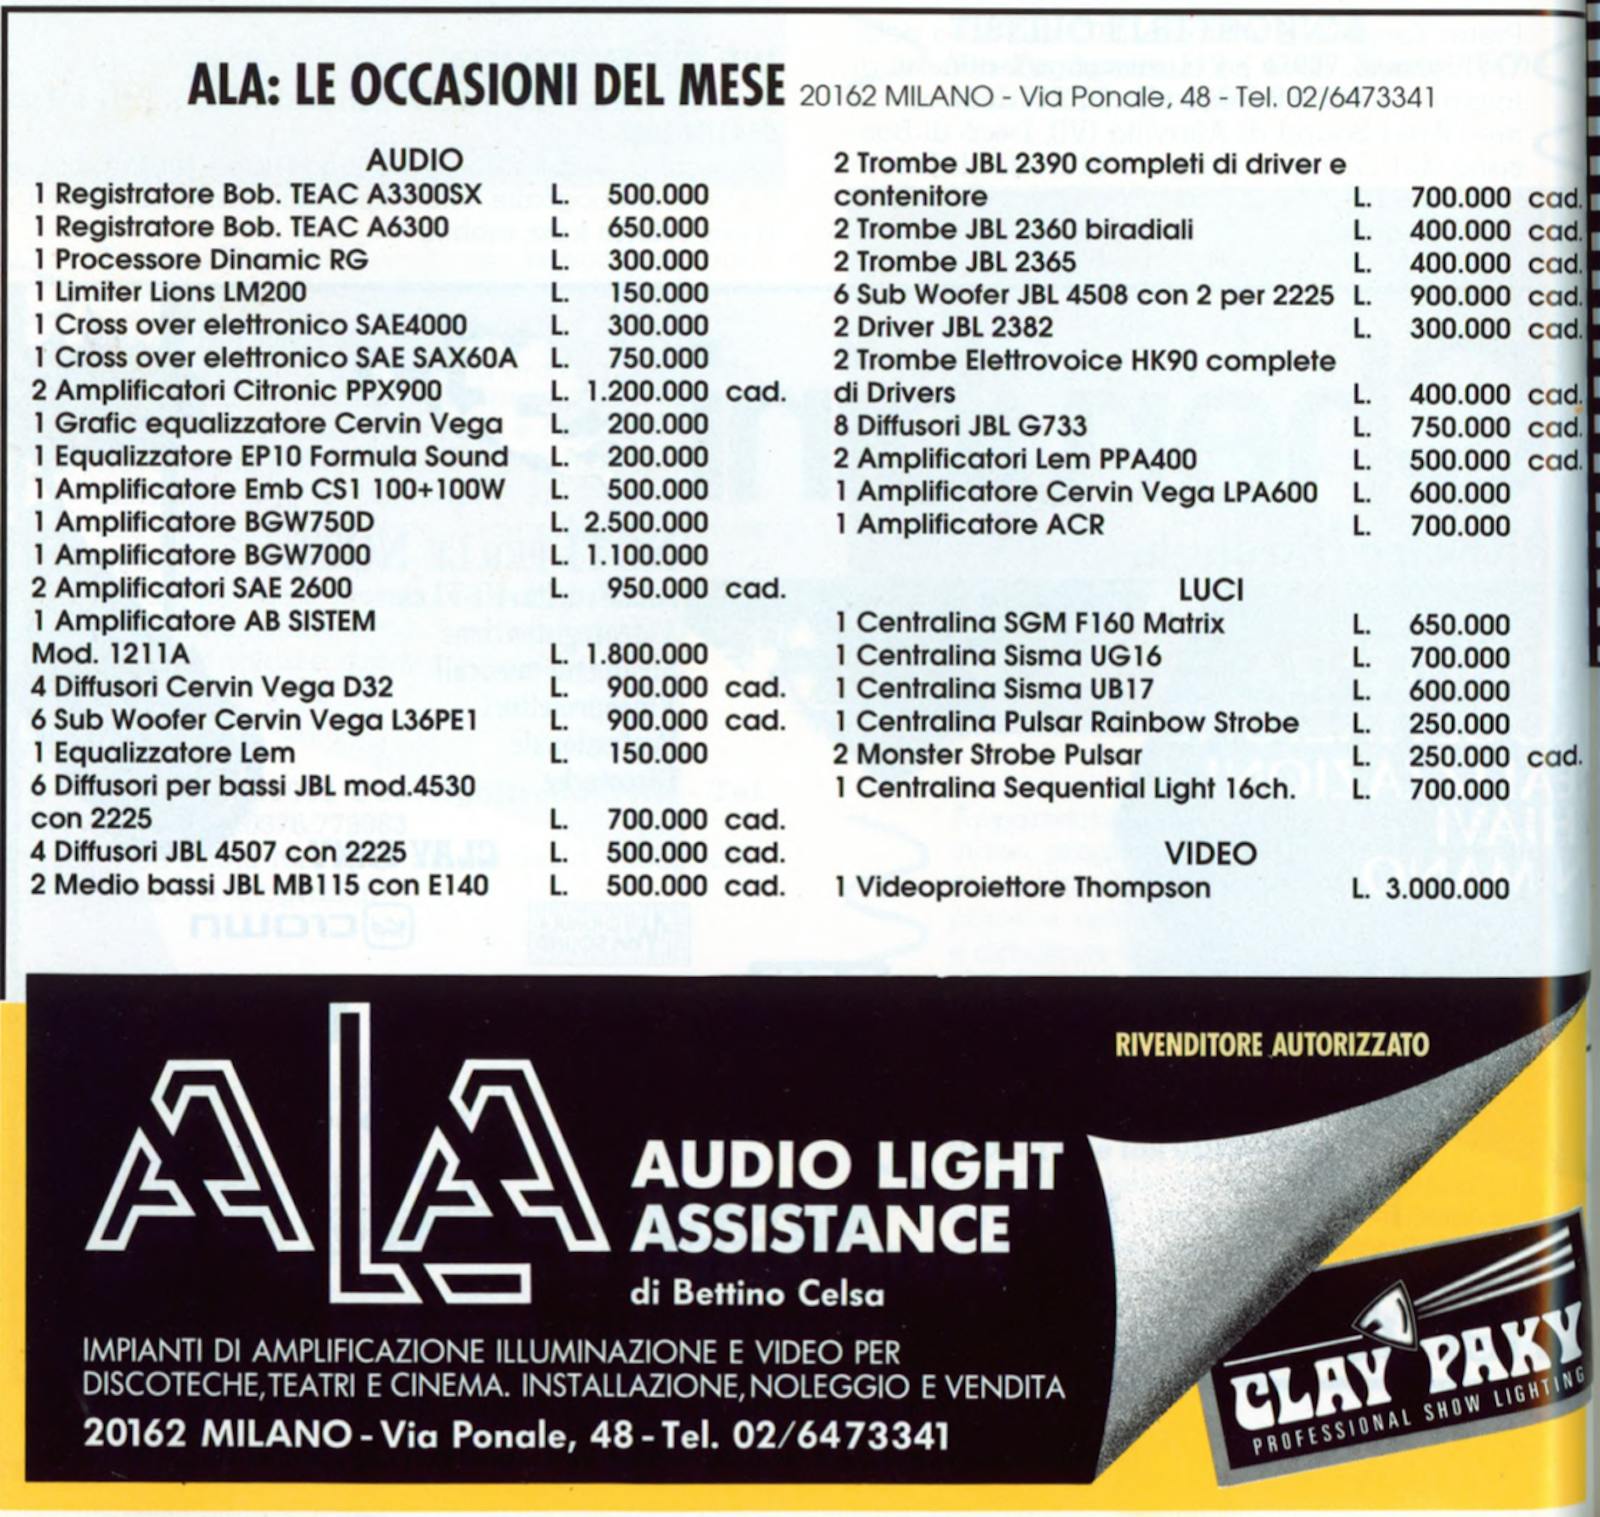 Pubblicità ALA Audio Light Assistance: Le occasioni del mese